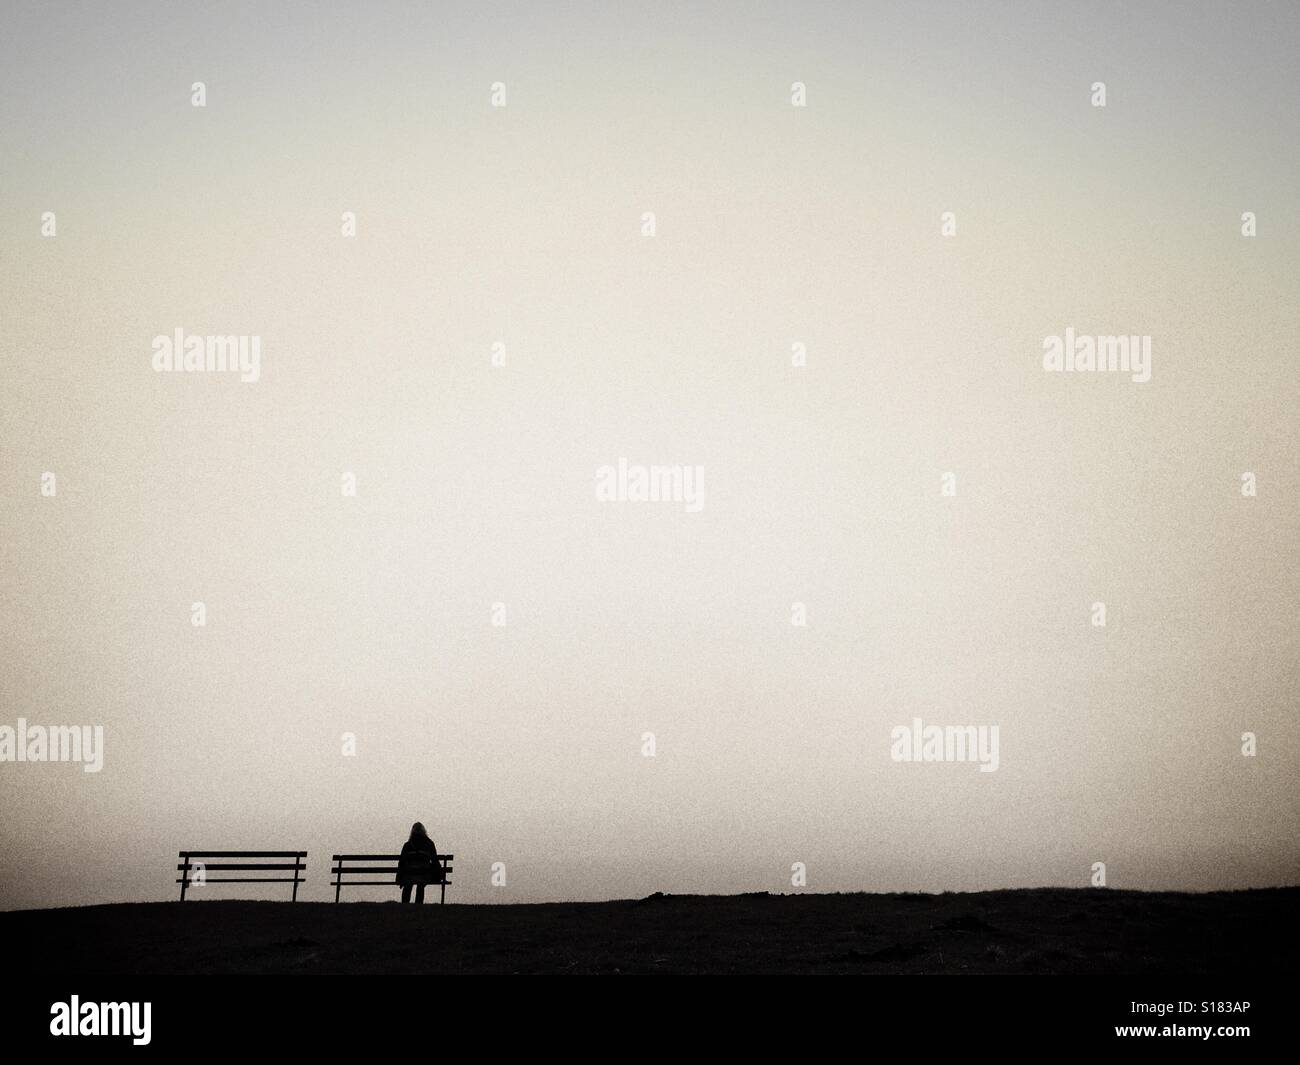 La figure solitaire sur un banc en silhouette contre un ciel clair Banque D'Images